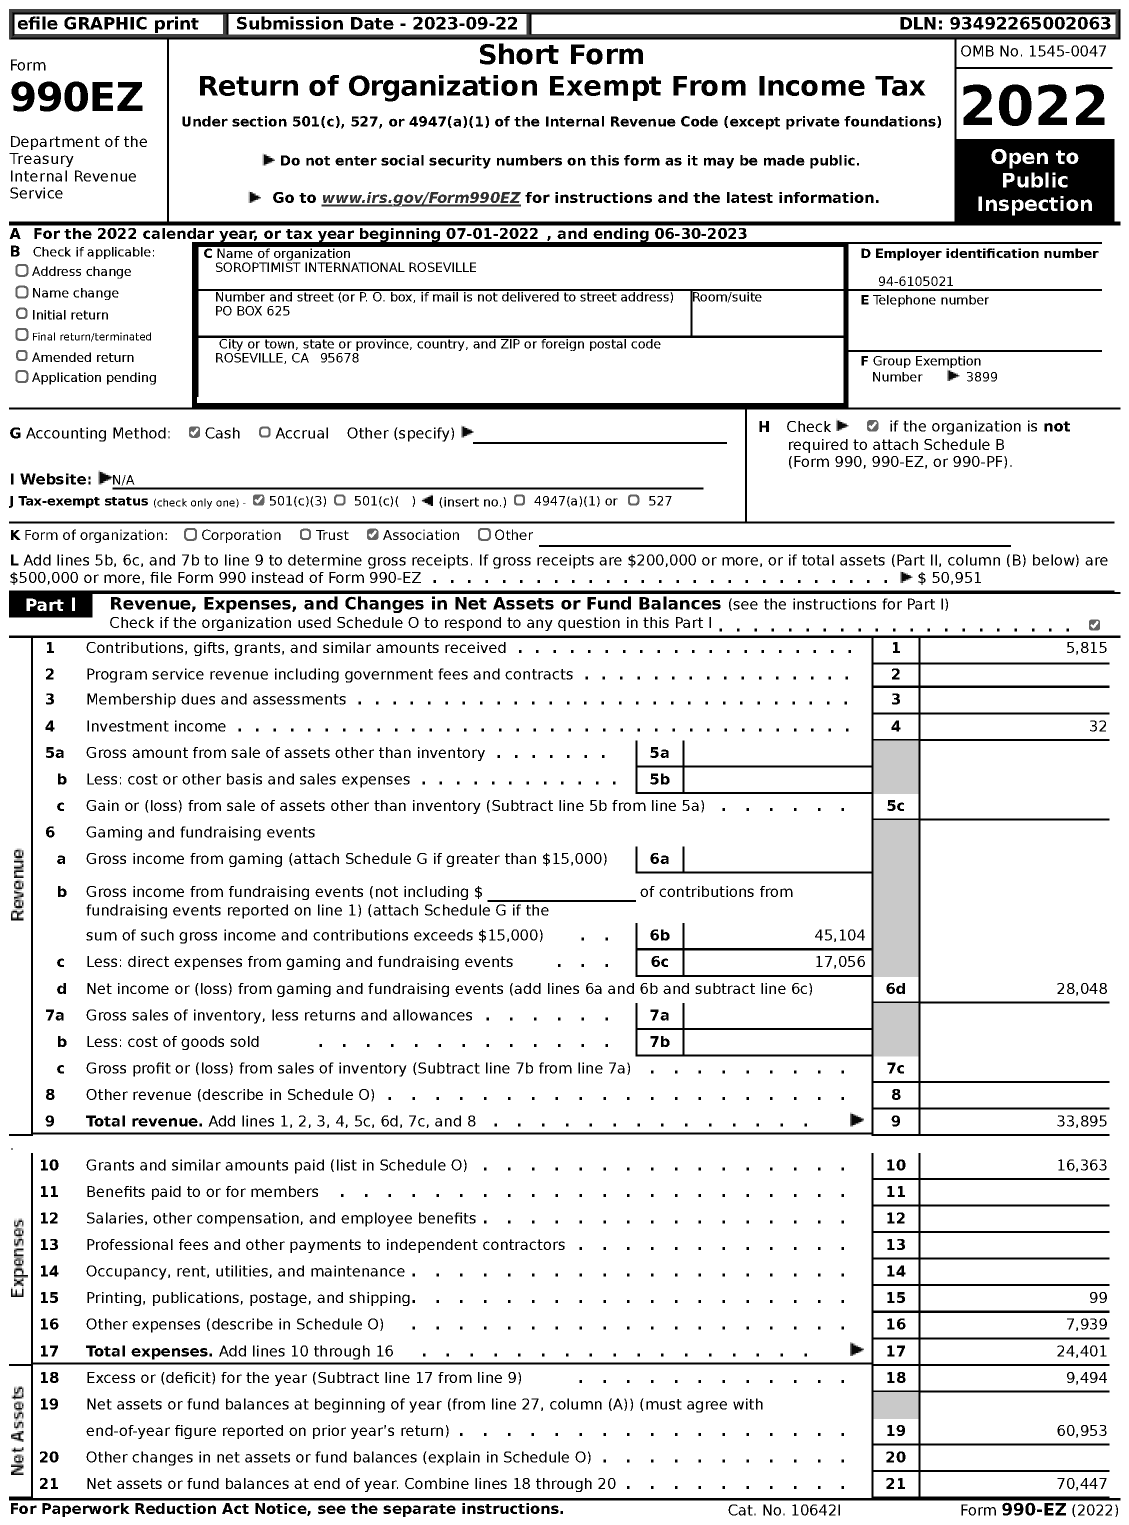 Image of first page of 2022 Form 990EZ for Soroptimist International Roseville